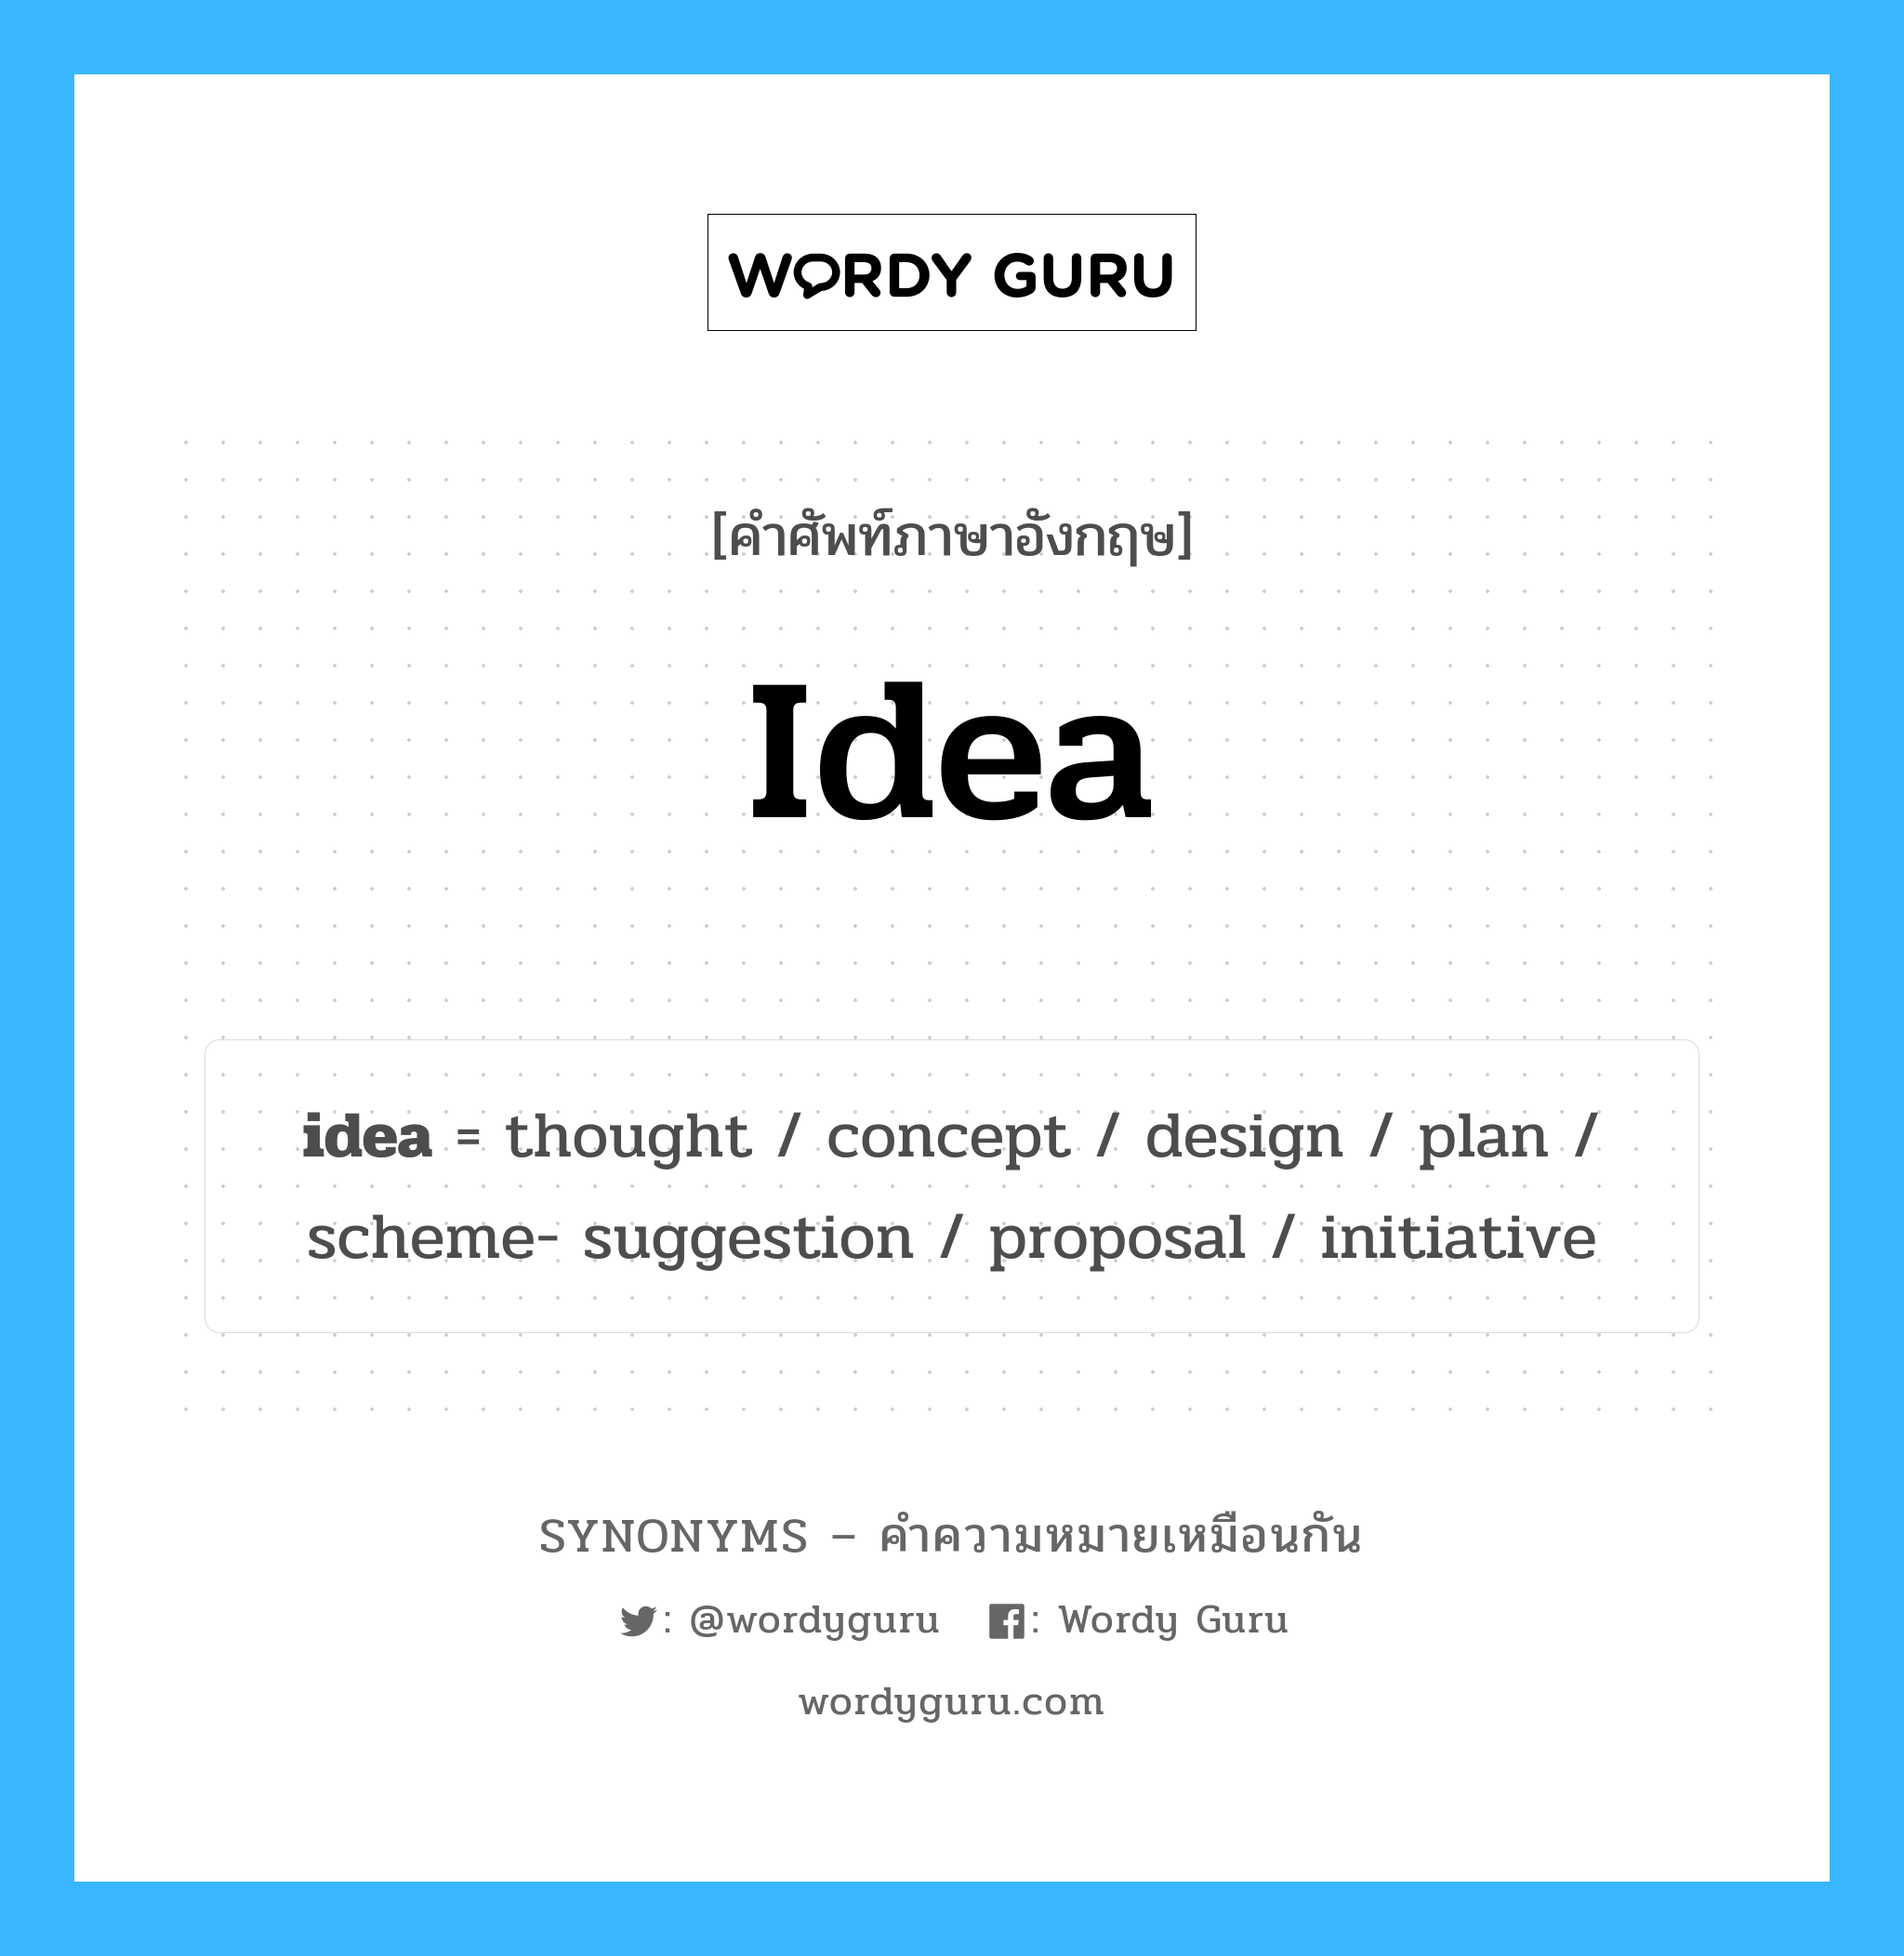 concept เป็นหนึ่งใน idea และมีคำอื่น ๆ อีกดังนี้, คำศัพท์ภาษาอังกฤษ concept ความหมายคล้ายกันกับ idea แปลว่า แนวคิด หมวด idea